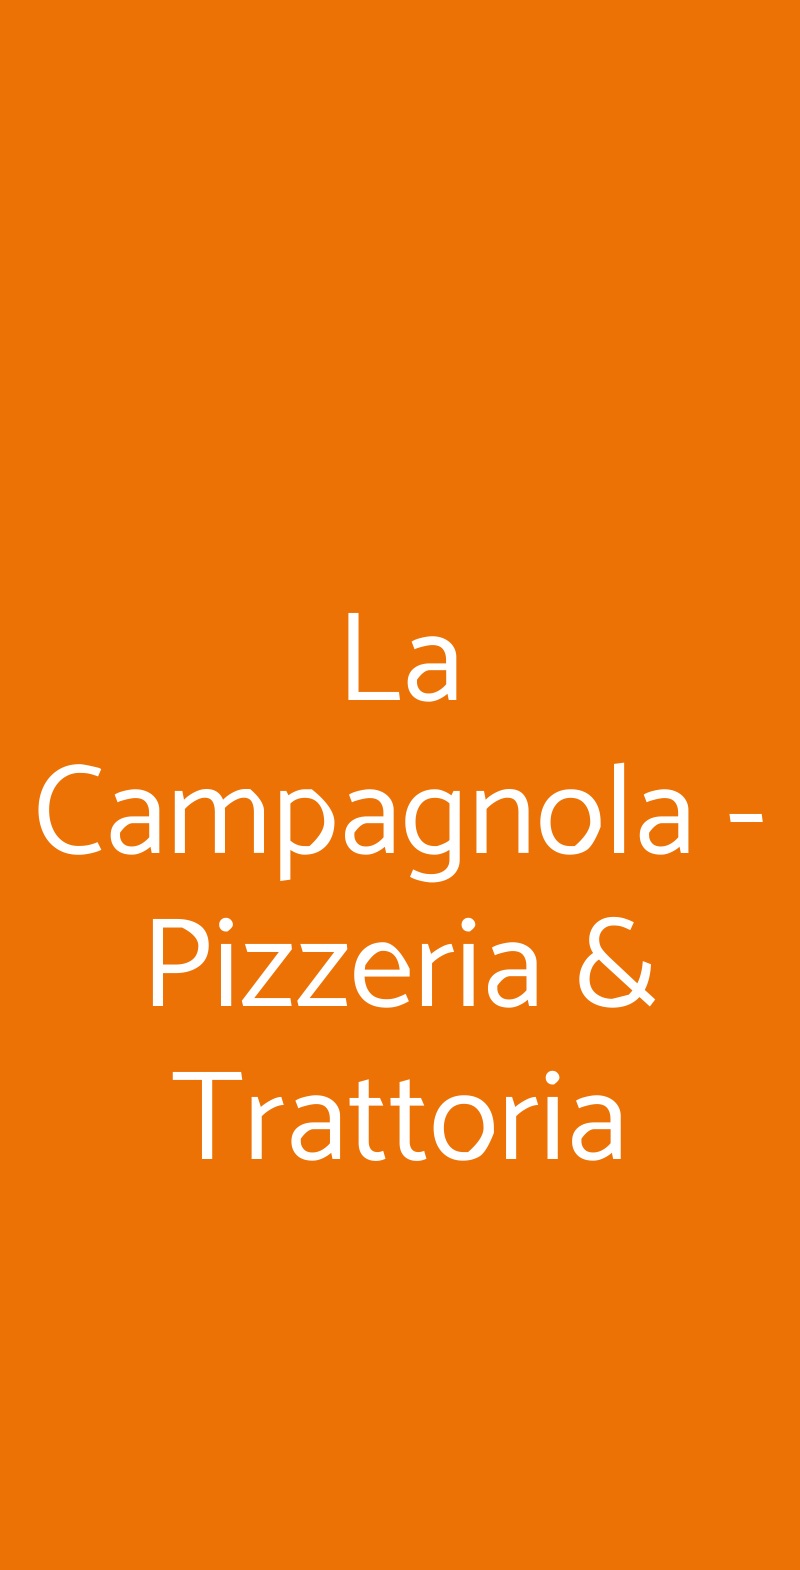 La Campagnola - Pizzeria & Trattoria Napoli menù 1 pagina